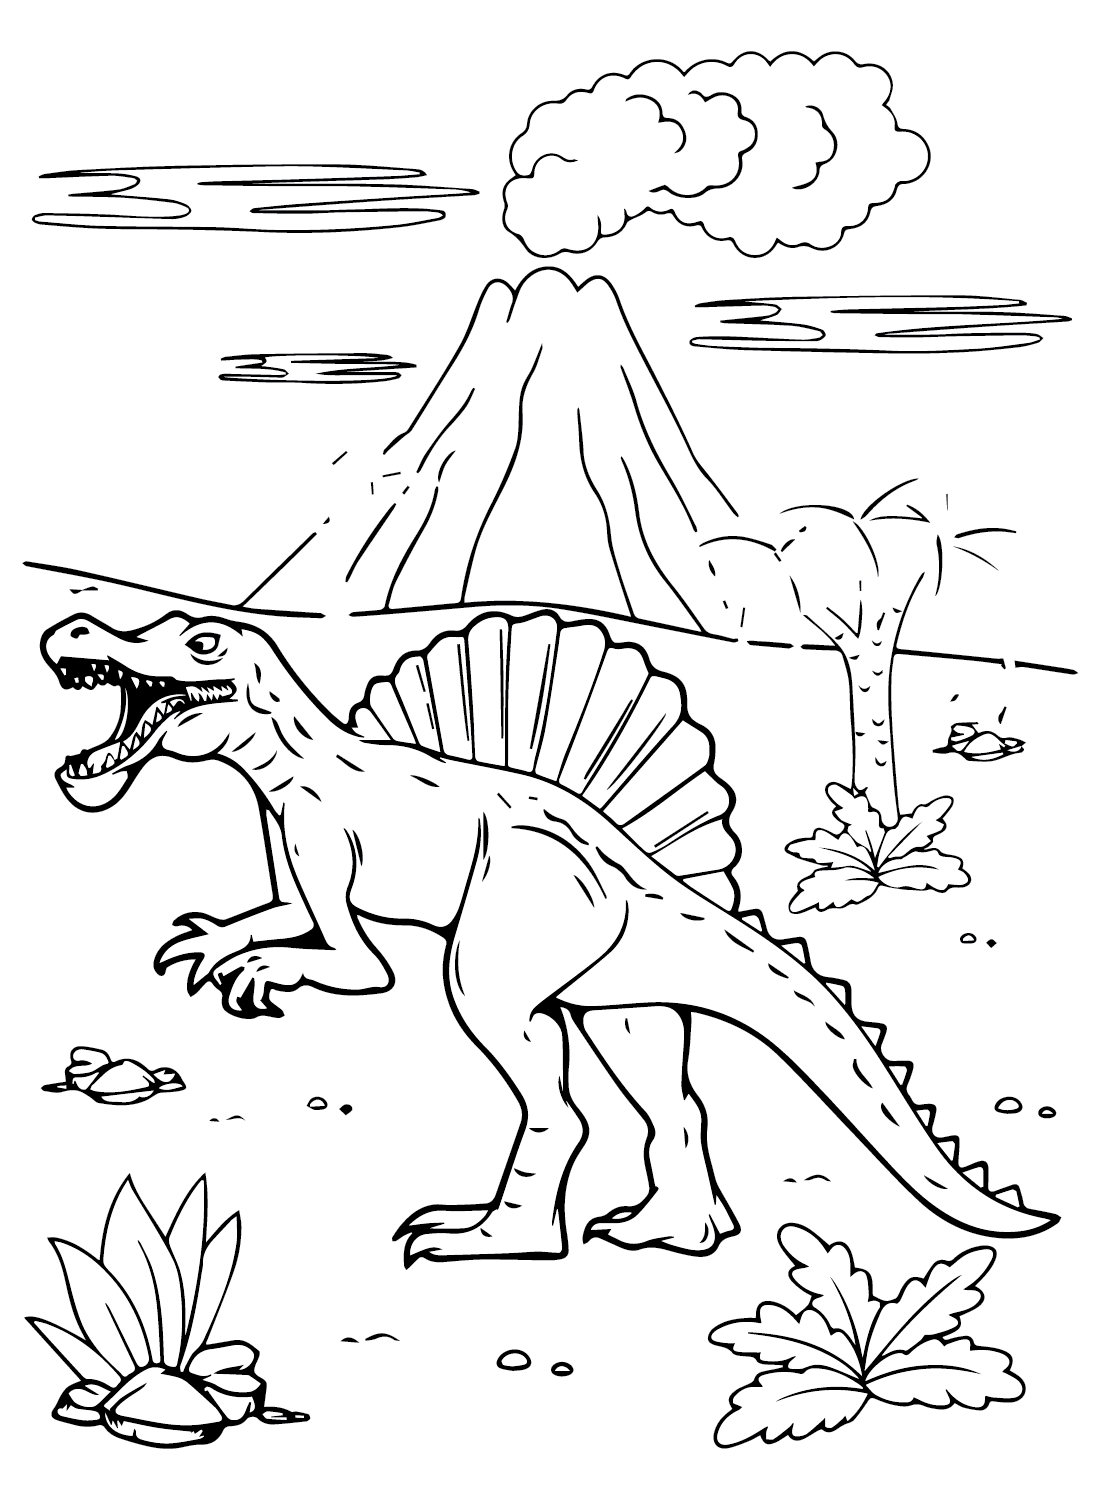 Раскраски Spinosaurus Aegyptiacus, которые можно скачать с сайта Spinosaurus Aegyptiacus